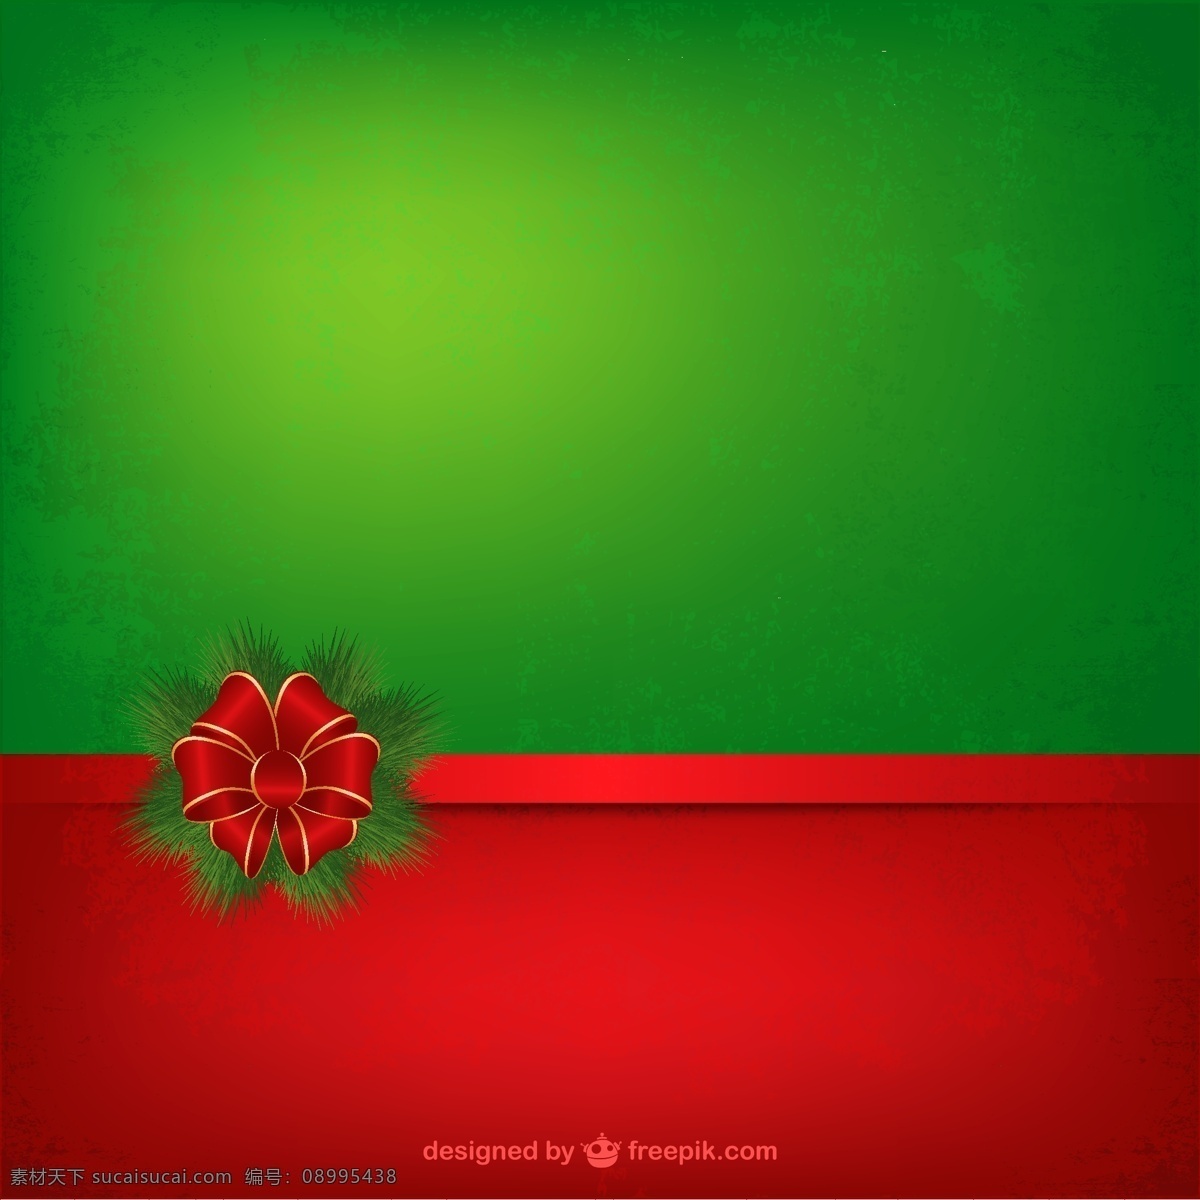 难看 红色 绿色 圣诞 背景 圣诞节 边境 垃圾 边界 绿色的背景 圣诞背景 红色背景 装饰 垃圾背景 背景绿色 圣诞装饰